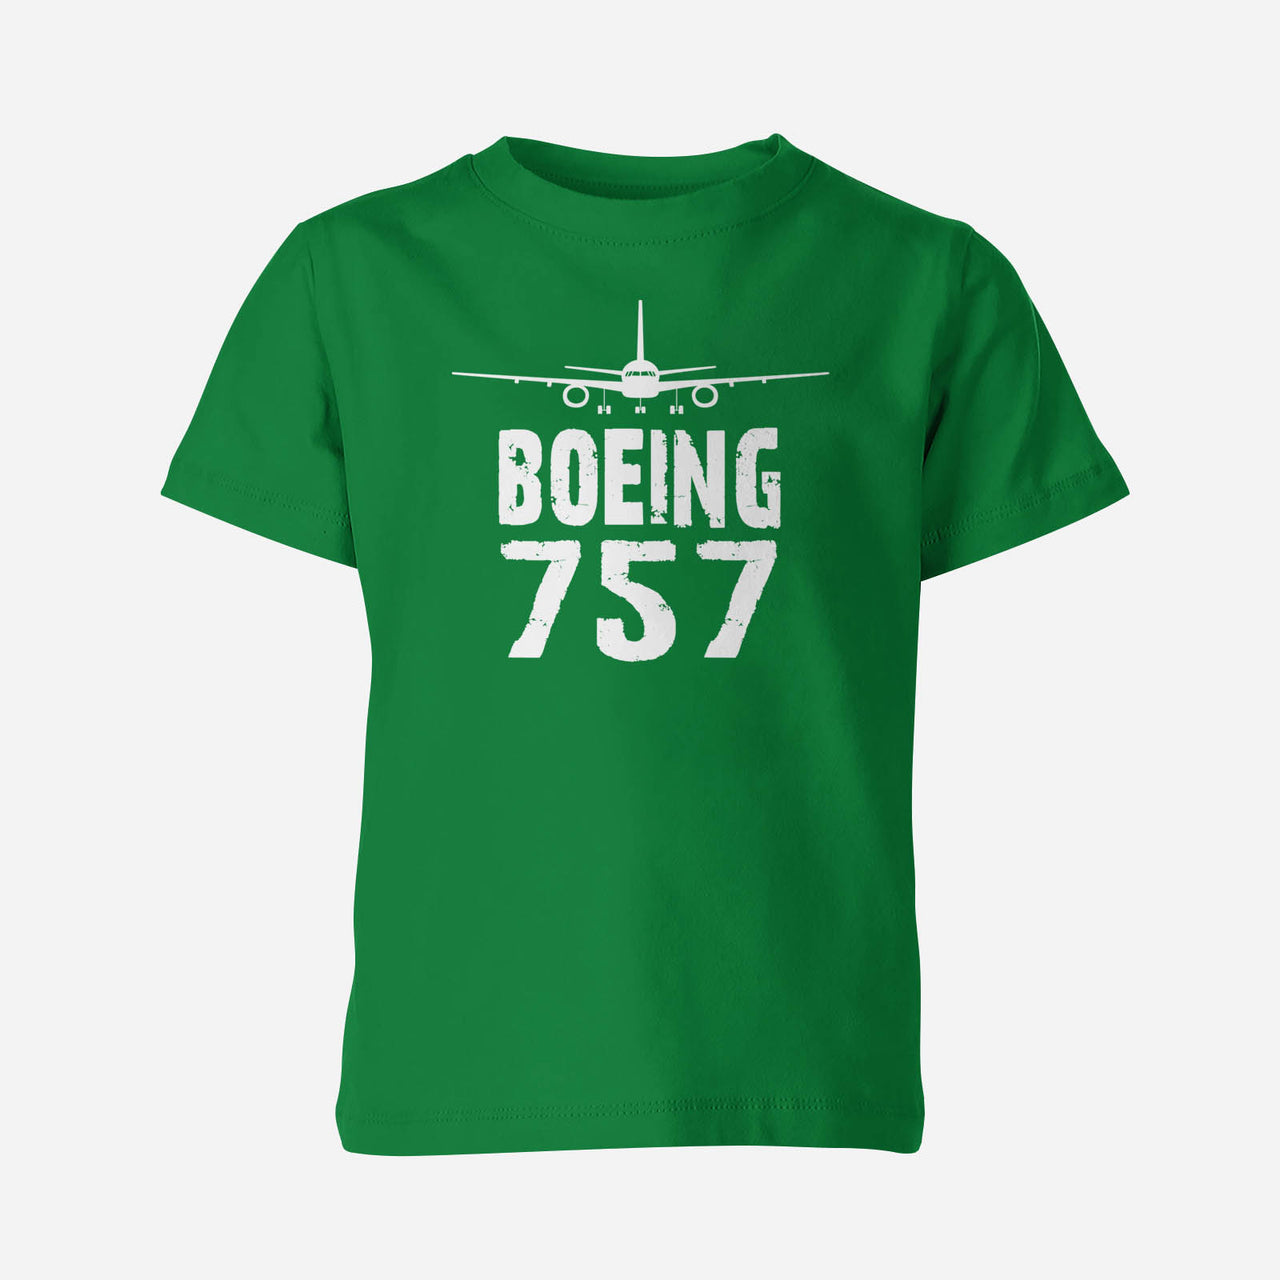 Boeing 757 & Plane Designed Children T-Shirts